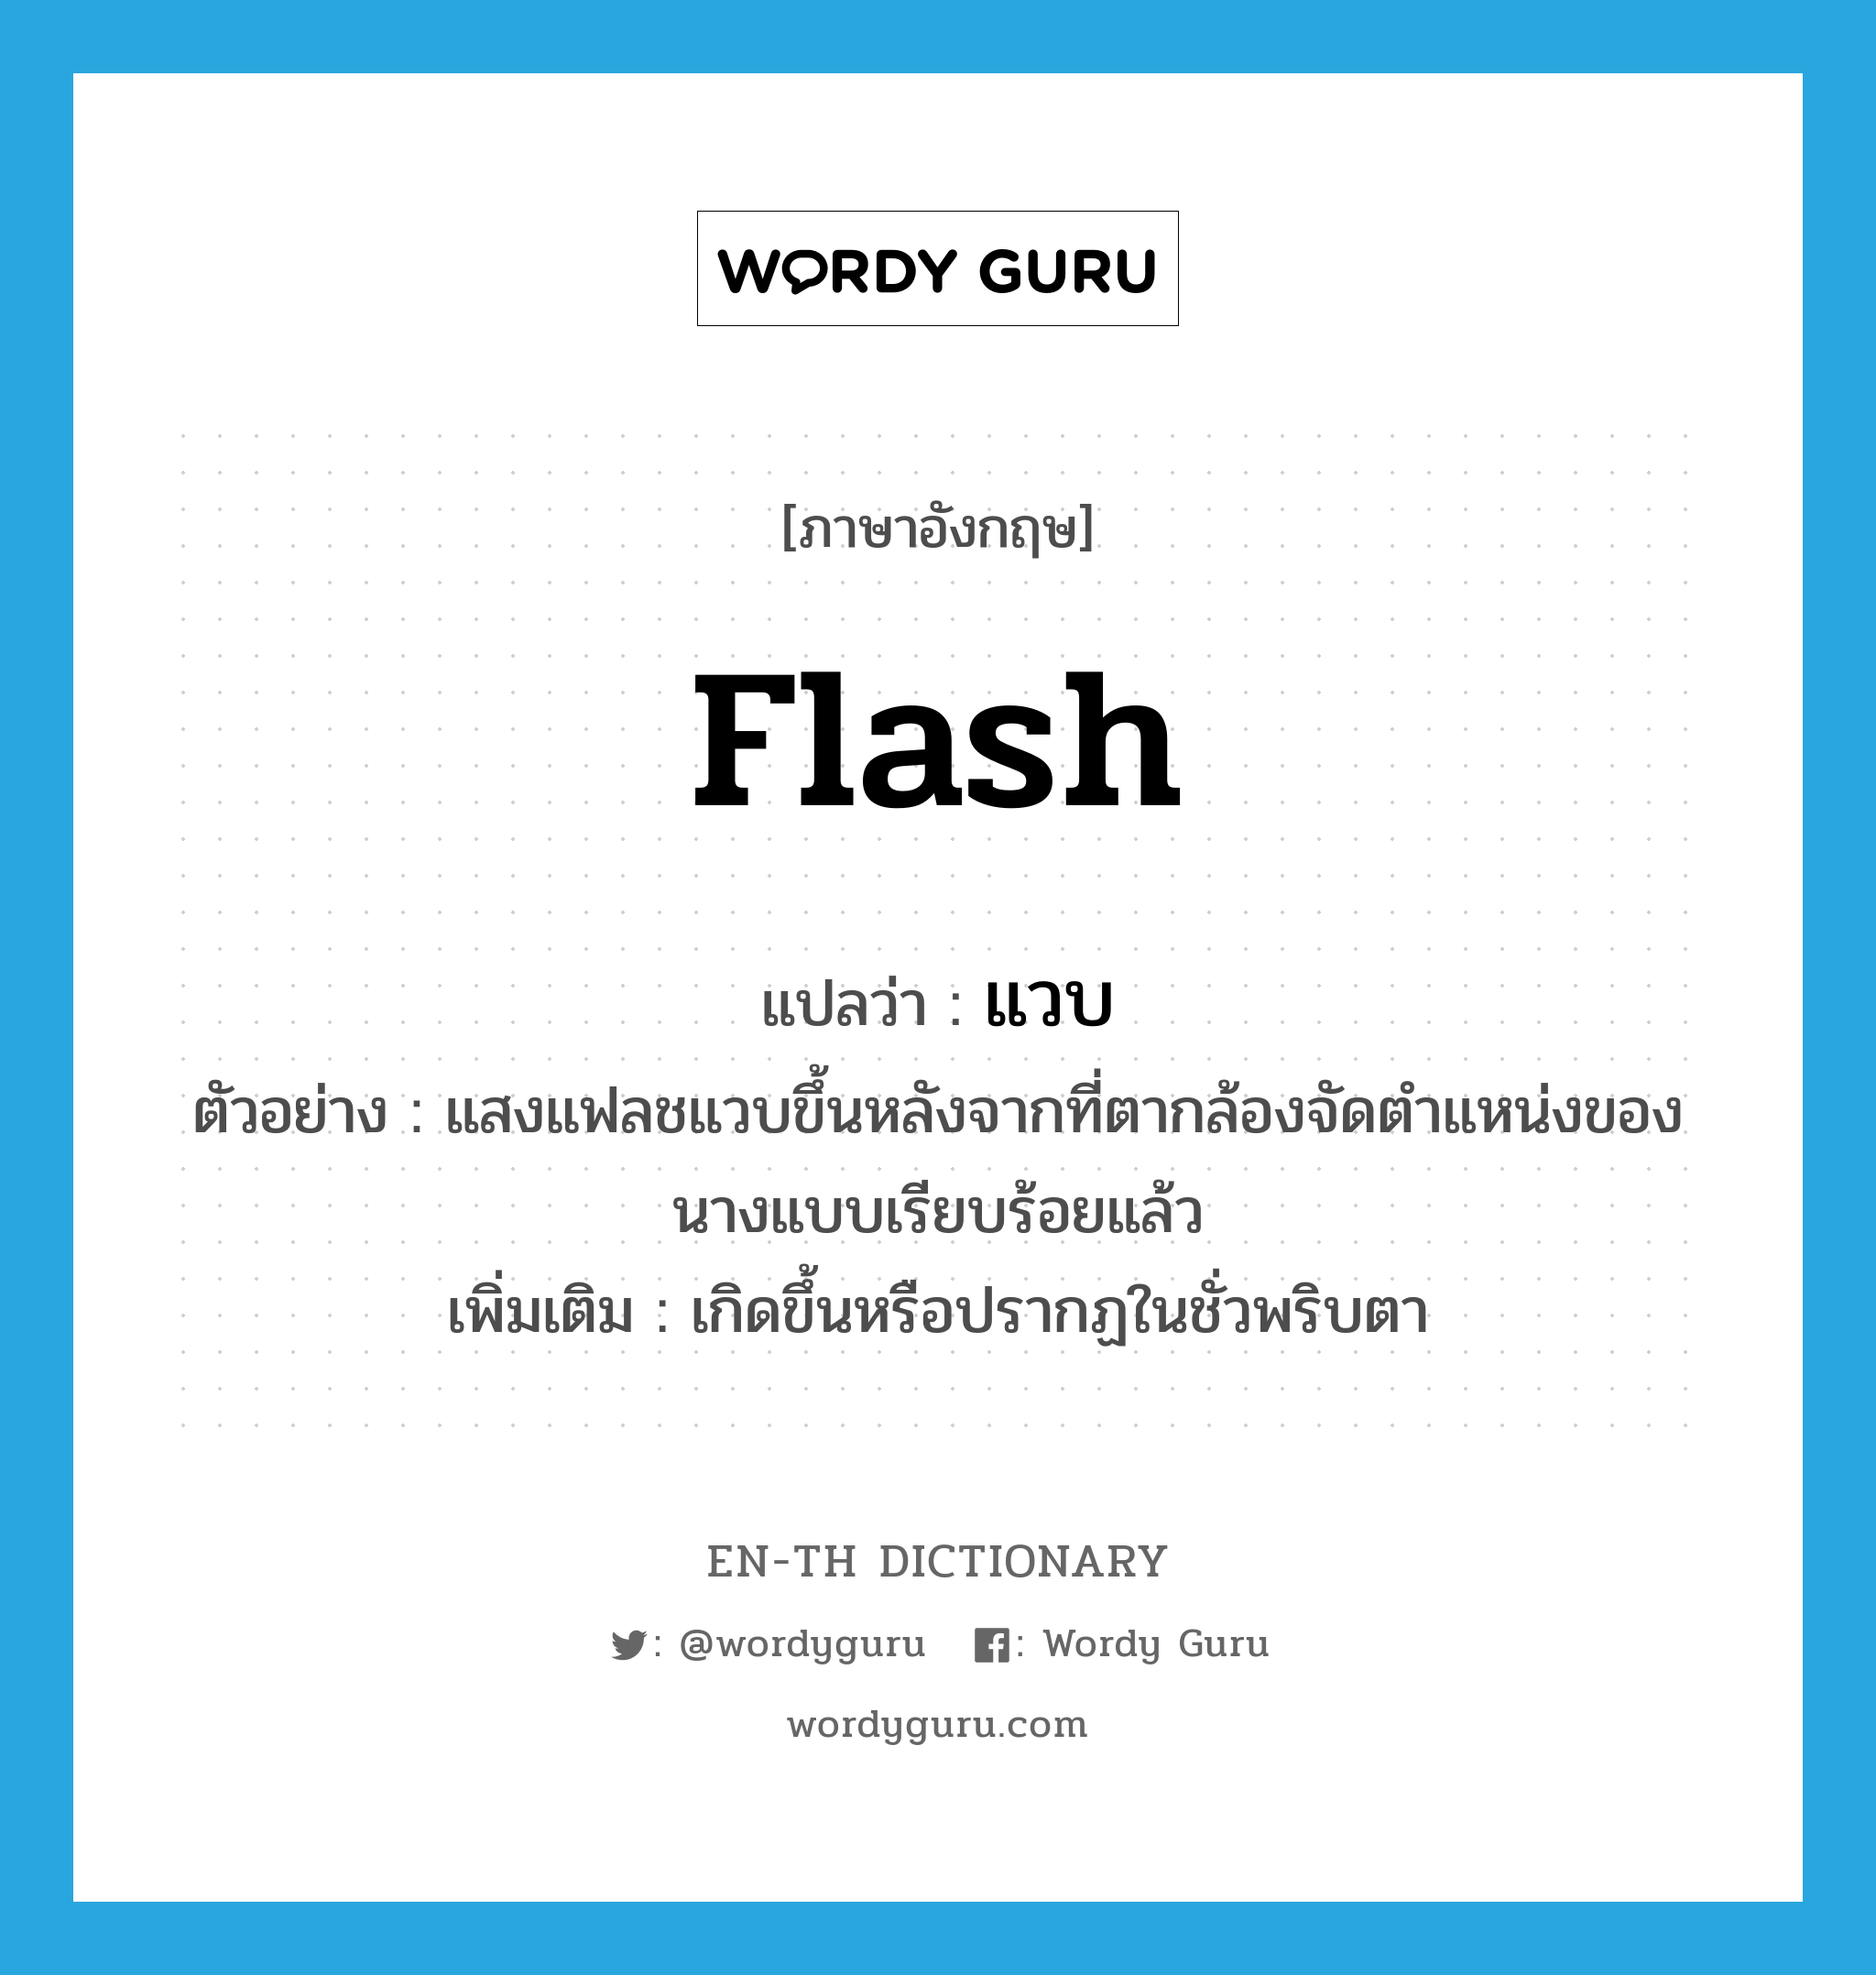 flash แปลว่า?, คำศัพท์ภาษาอังกฤษ flash แปลว่า แวบ ประเภท V ตัวอย่าง แสงแฟลชแวบขึ้นหลังจากที่ตากล้องจัดตำแหน่งของนางแบบเรียบร้อยแล้ว เพิ่มเติม เกิดขึ้นหรือปรากฏในชั่วพริบตา หมวด V